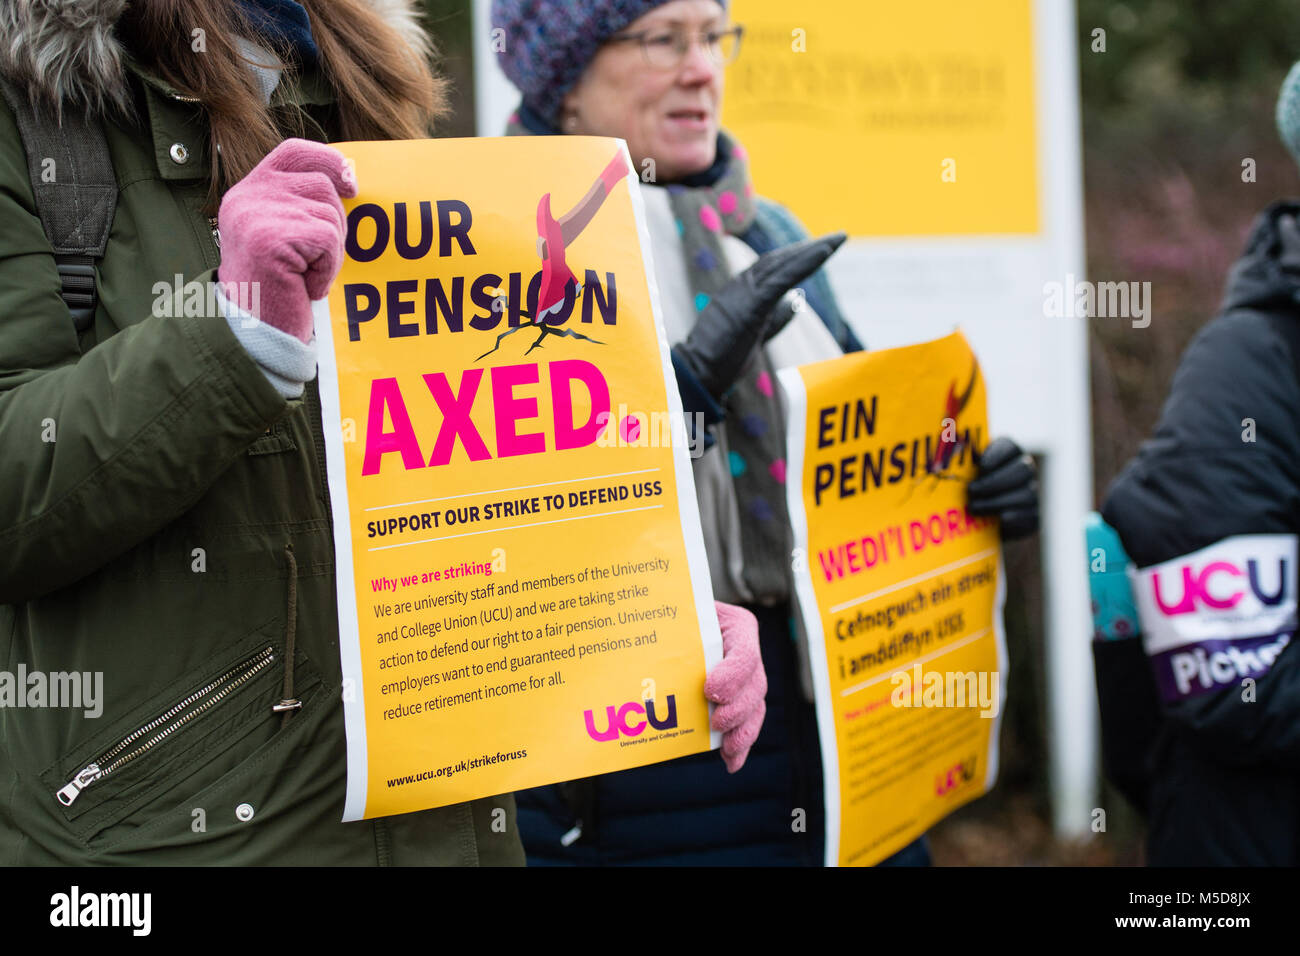 Pays de Galles Aberystwyth UK, jeudi 22 février 2018 Grève UCU : membres de l'UCU (University and College Union) sur une ligne de piquetage à l'extérieur du campus pour l'Université d'Aberystwyth, le premier jour de l'ensemble du Royaume-Uni série de grèves appelées par l'Union européenne pour protester contre les coupures à leurs membres des prestations de retraite garanti à long terme et de l'homme. Il y a des membres de l'UCU 400 sur le personnel de l'Université d'Aberystwyth, et de nombreuses conférences et des classes devra être annulée ou reportée par suite de ces jours de grève Crédit : Keith Morris / Alamy Live News Banque D'Images